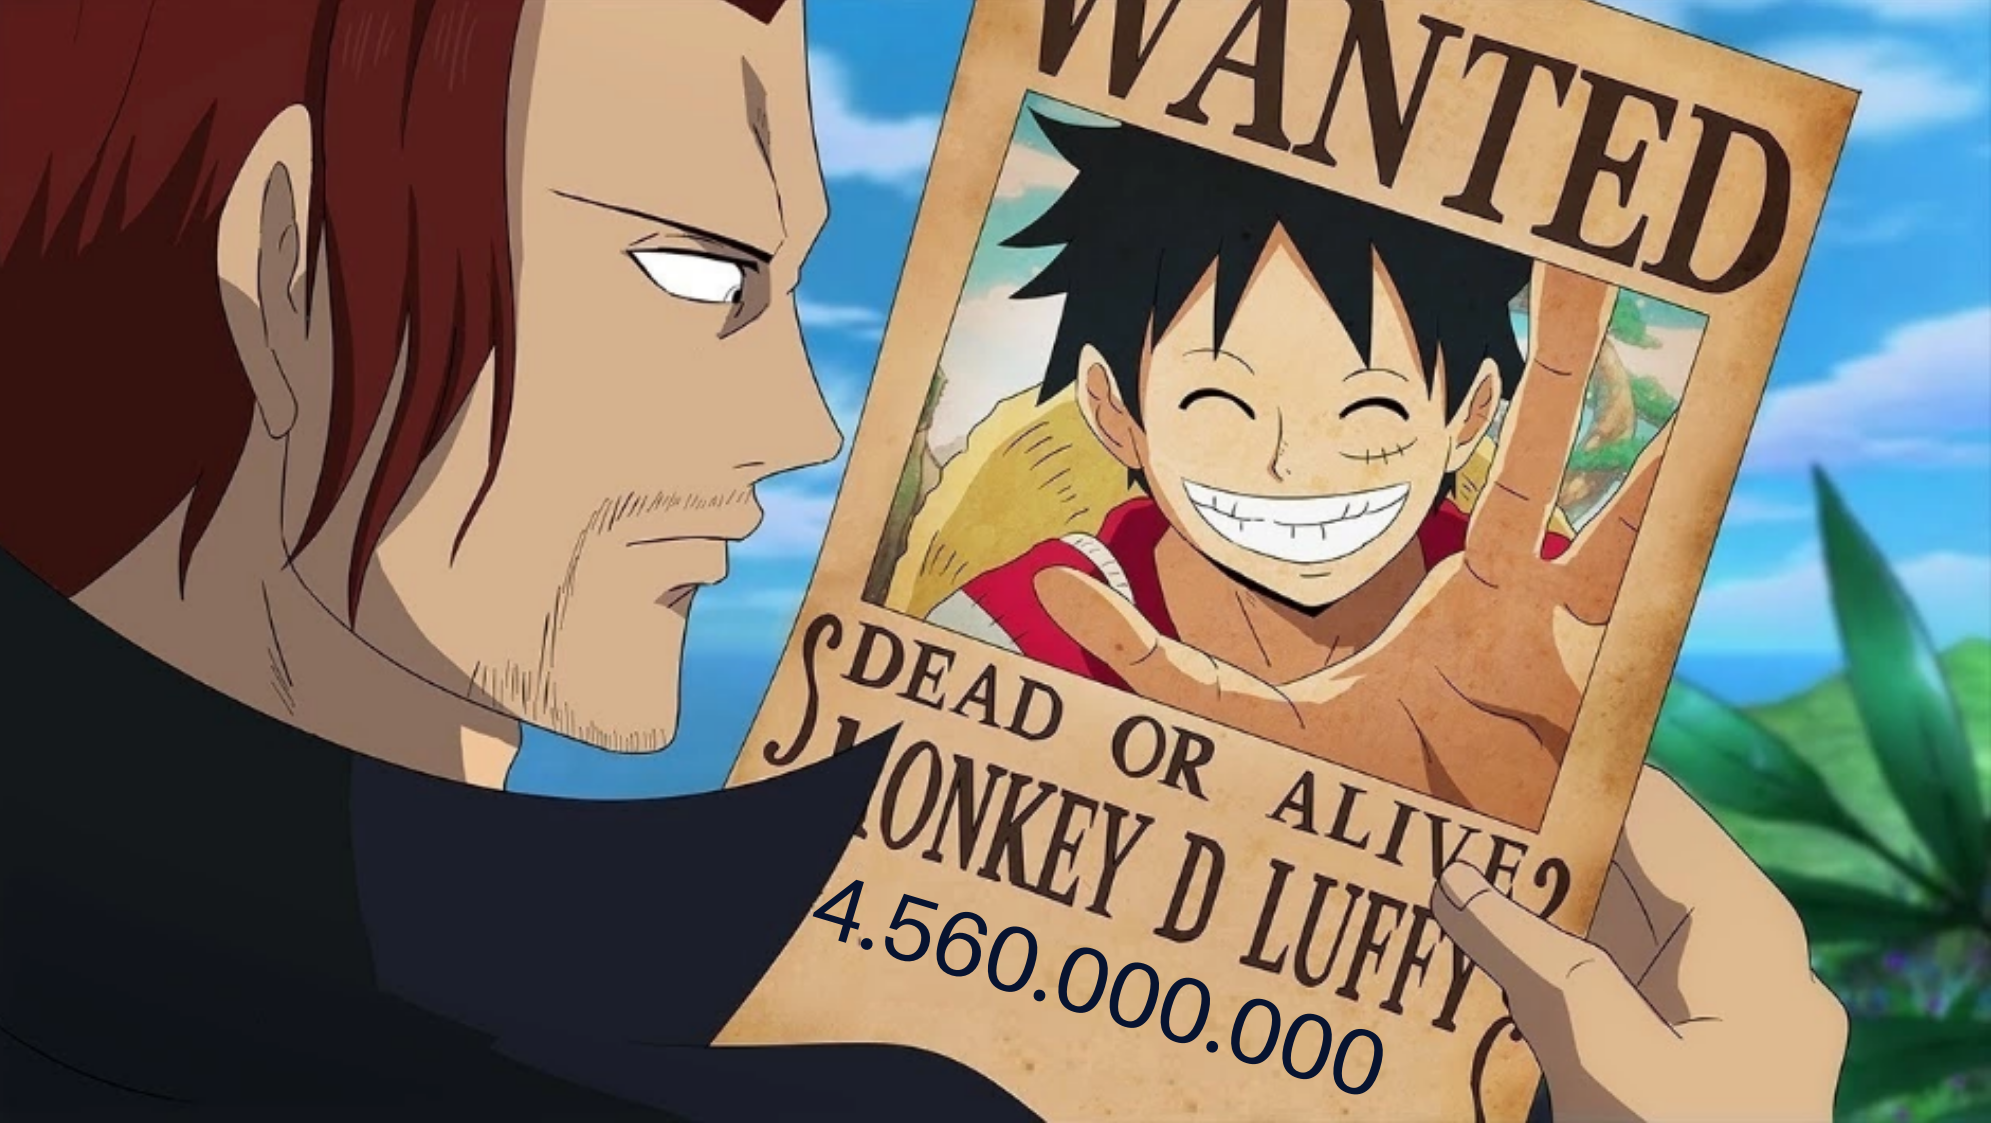 Nova recompensa do Luffy vai para as alturas #onepiece #anime #otaku #